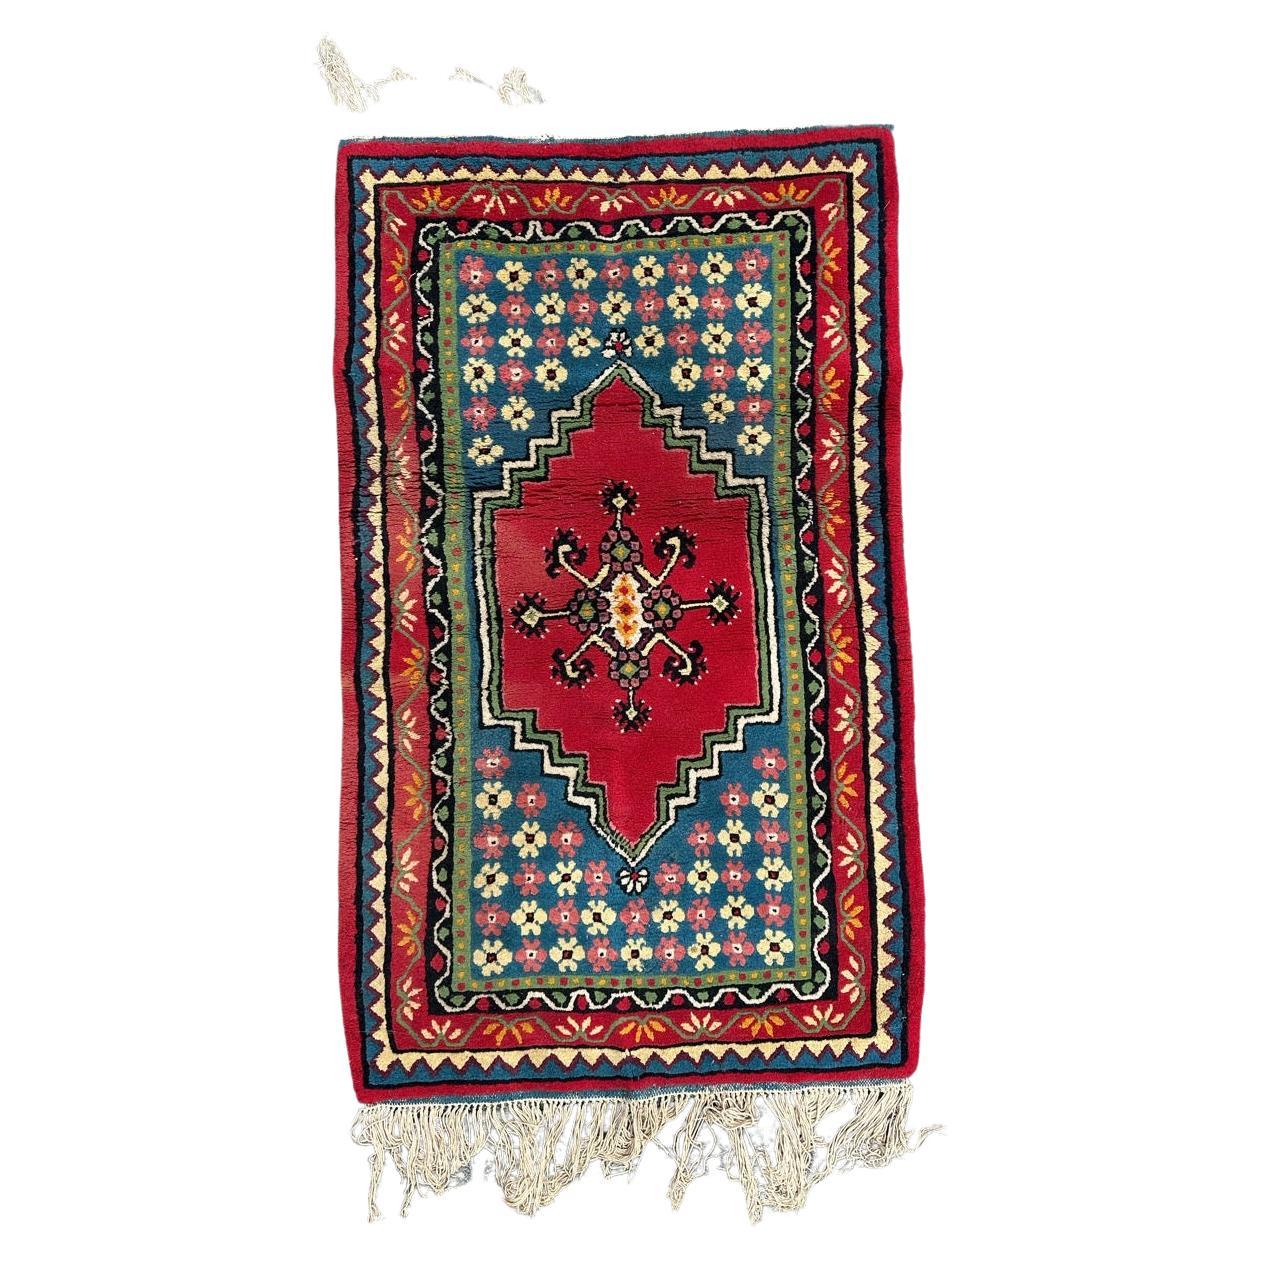 Le beau tapis tunisien tribal vintage de Bobyrug